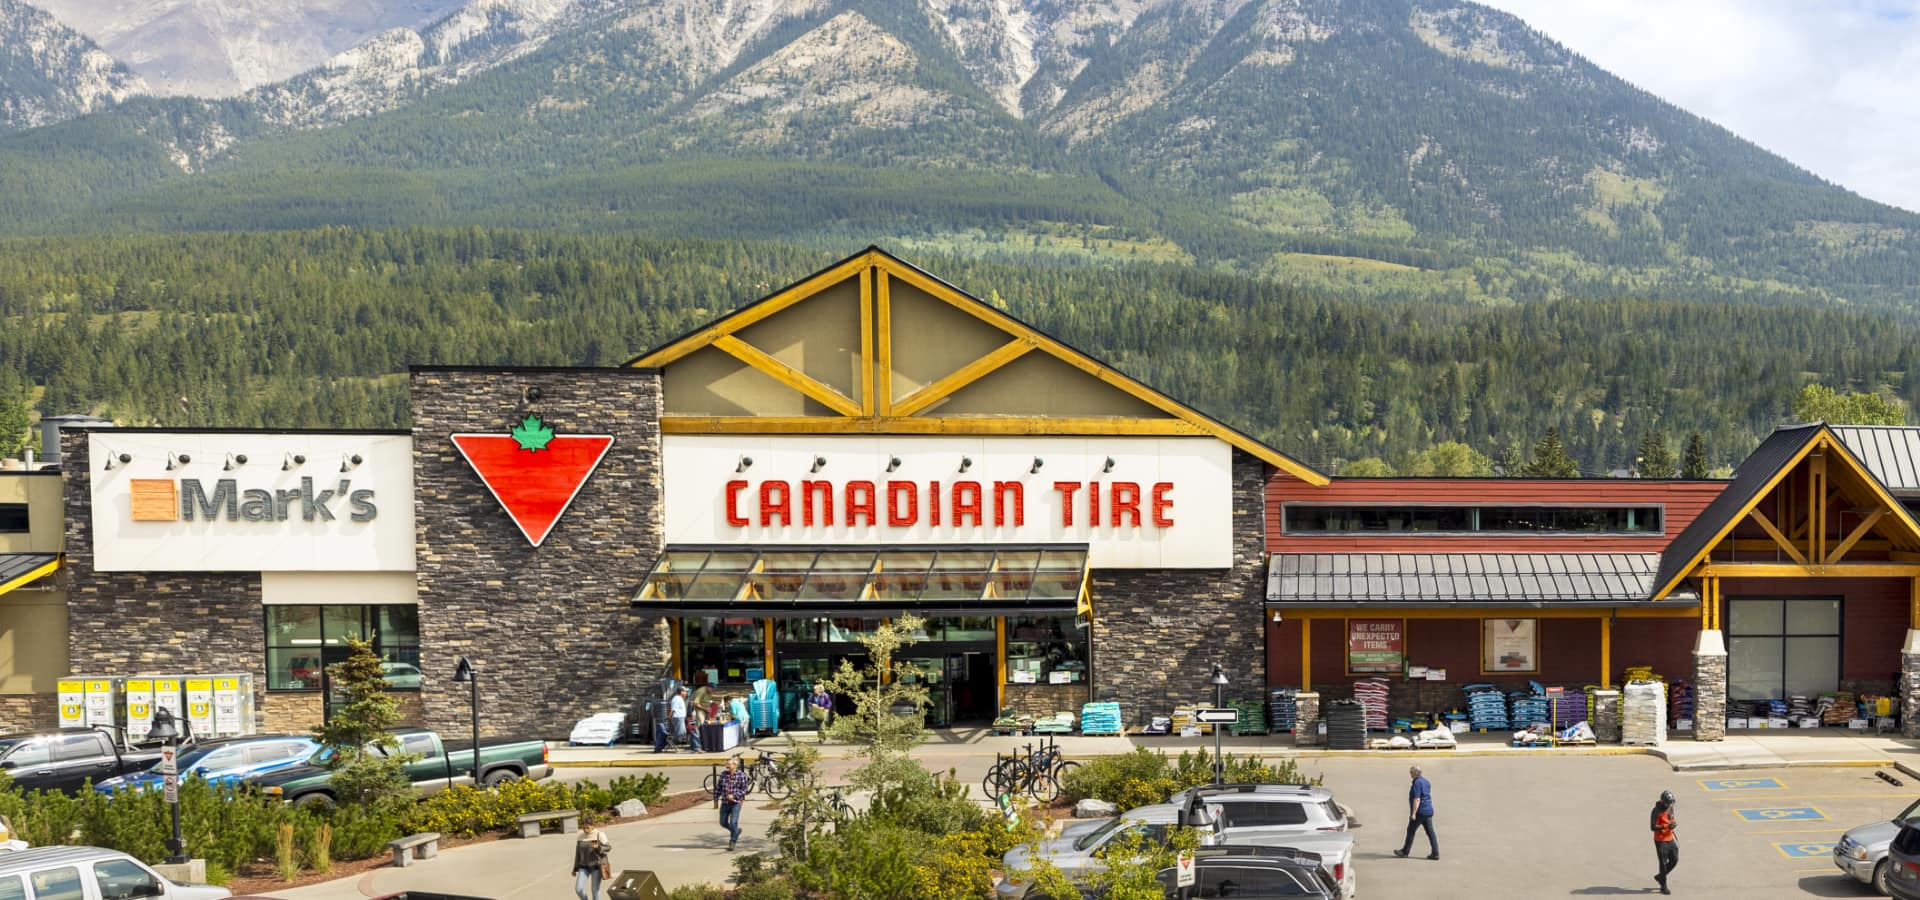 Un magasin Canadian Tire et un magasin Mark’s côte à côte dans le paysage montagneux de Canmore, en Alberta.